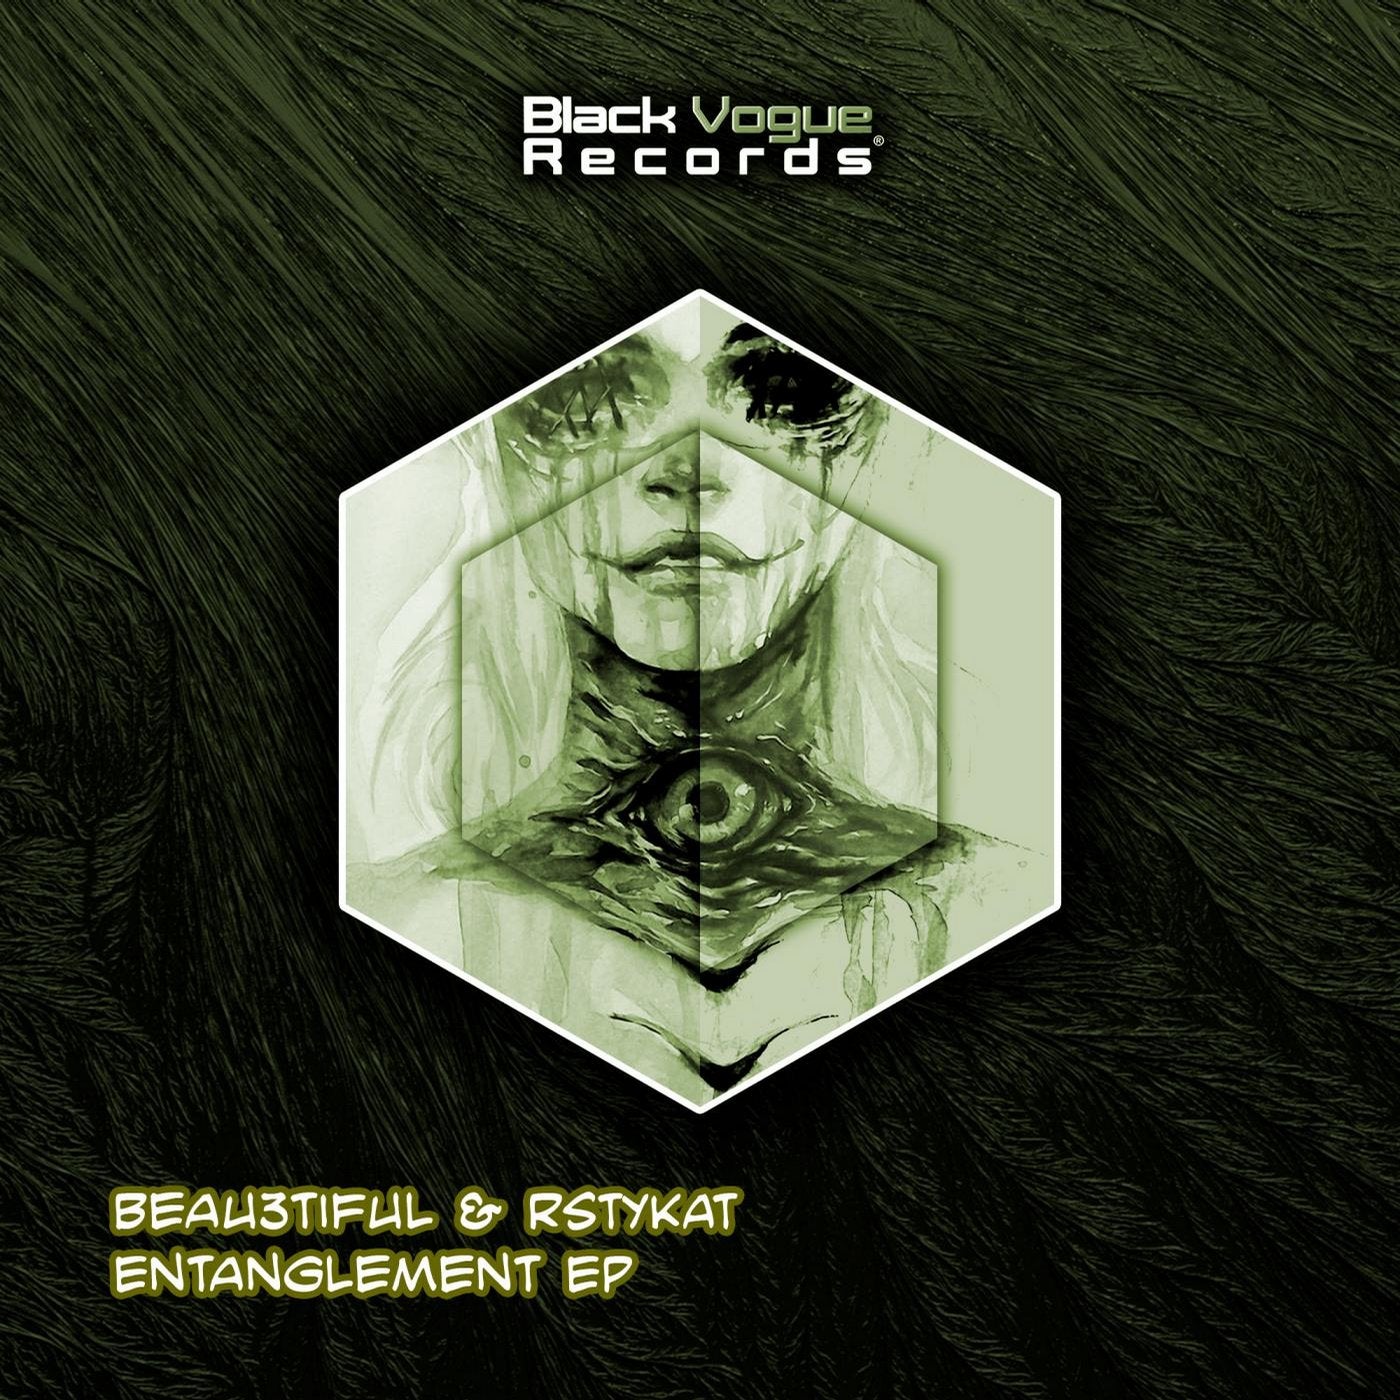 Entanglement EP